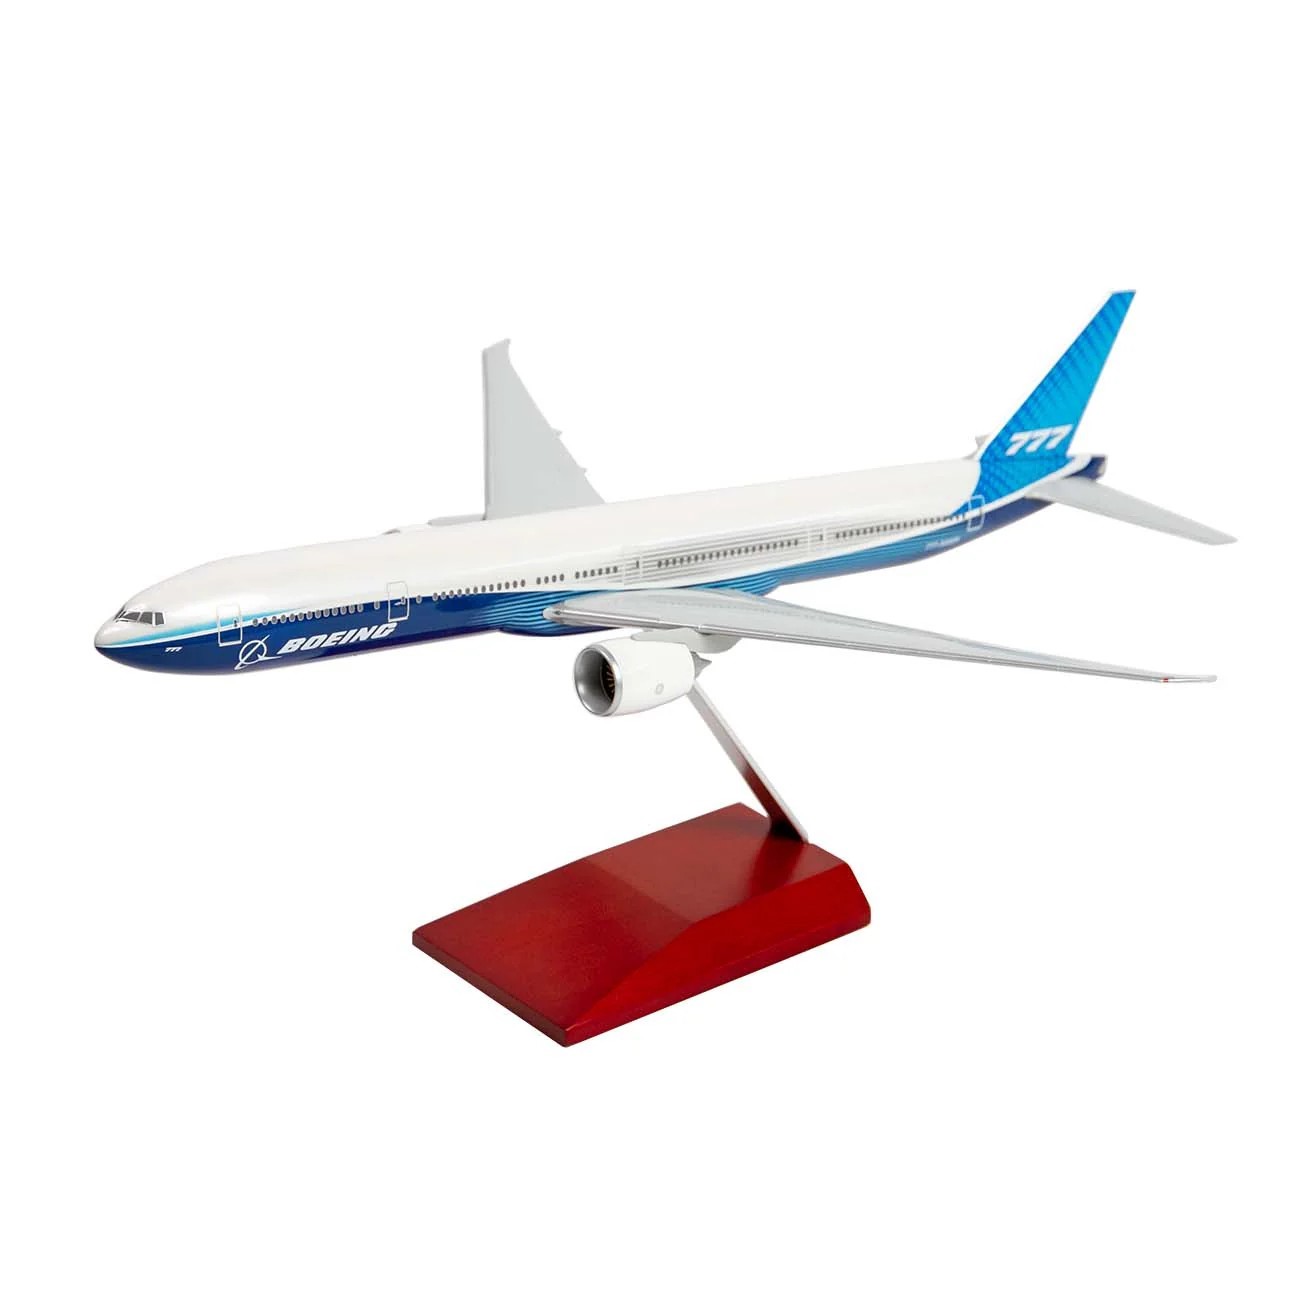 【BOEING】 ボーイング 777-300ER プラスチック モデル (1/200)